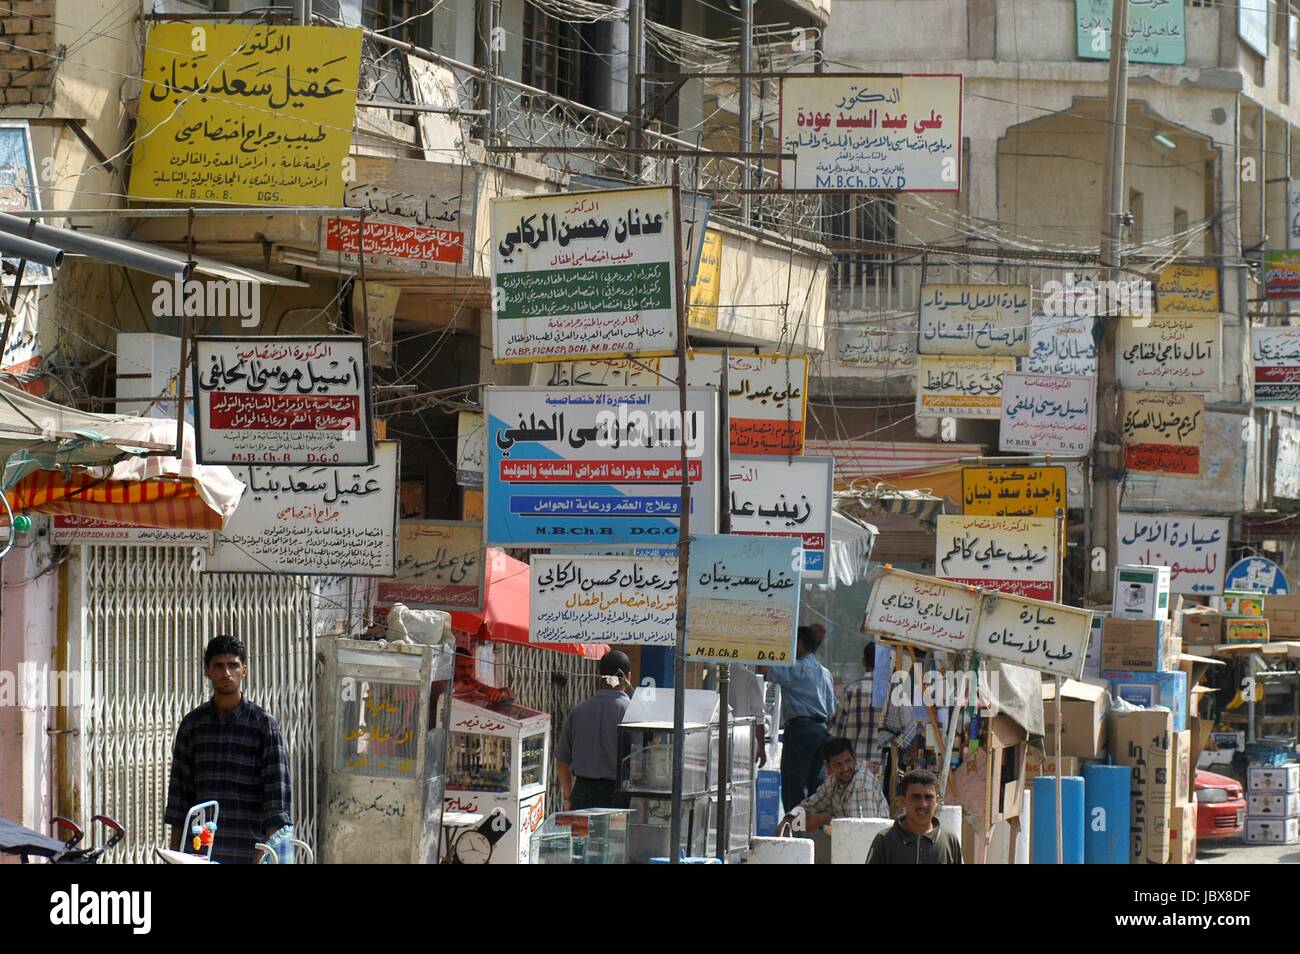 Iraq, street advertising in the city of Nassiriya Stock Photo